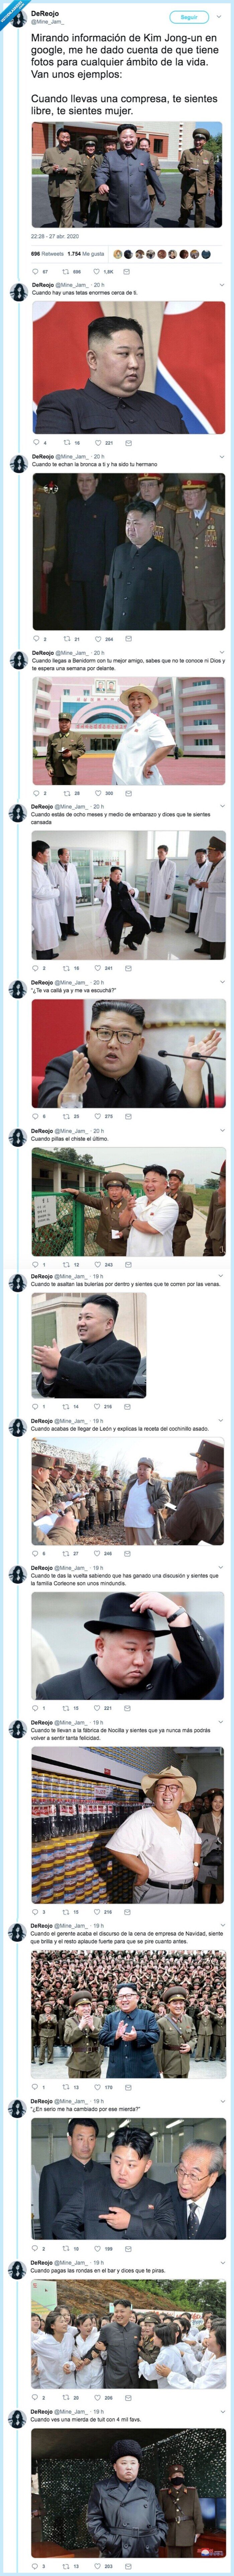 566908 - Mirando información de Kim Jong-un en Google, te das cuenta de que tiene fotos para cualquier ámbito de la vida, por @Mine_Jam_